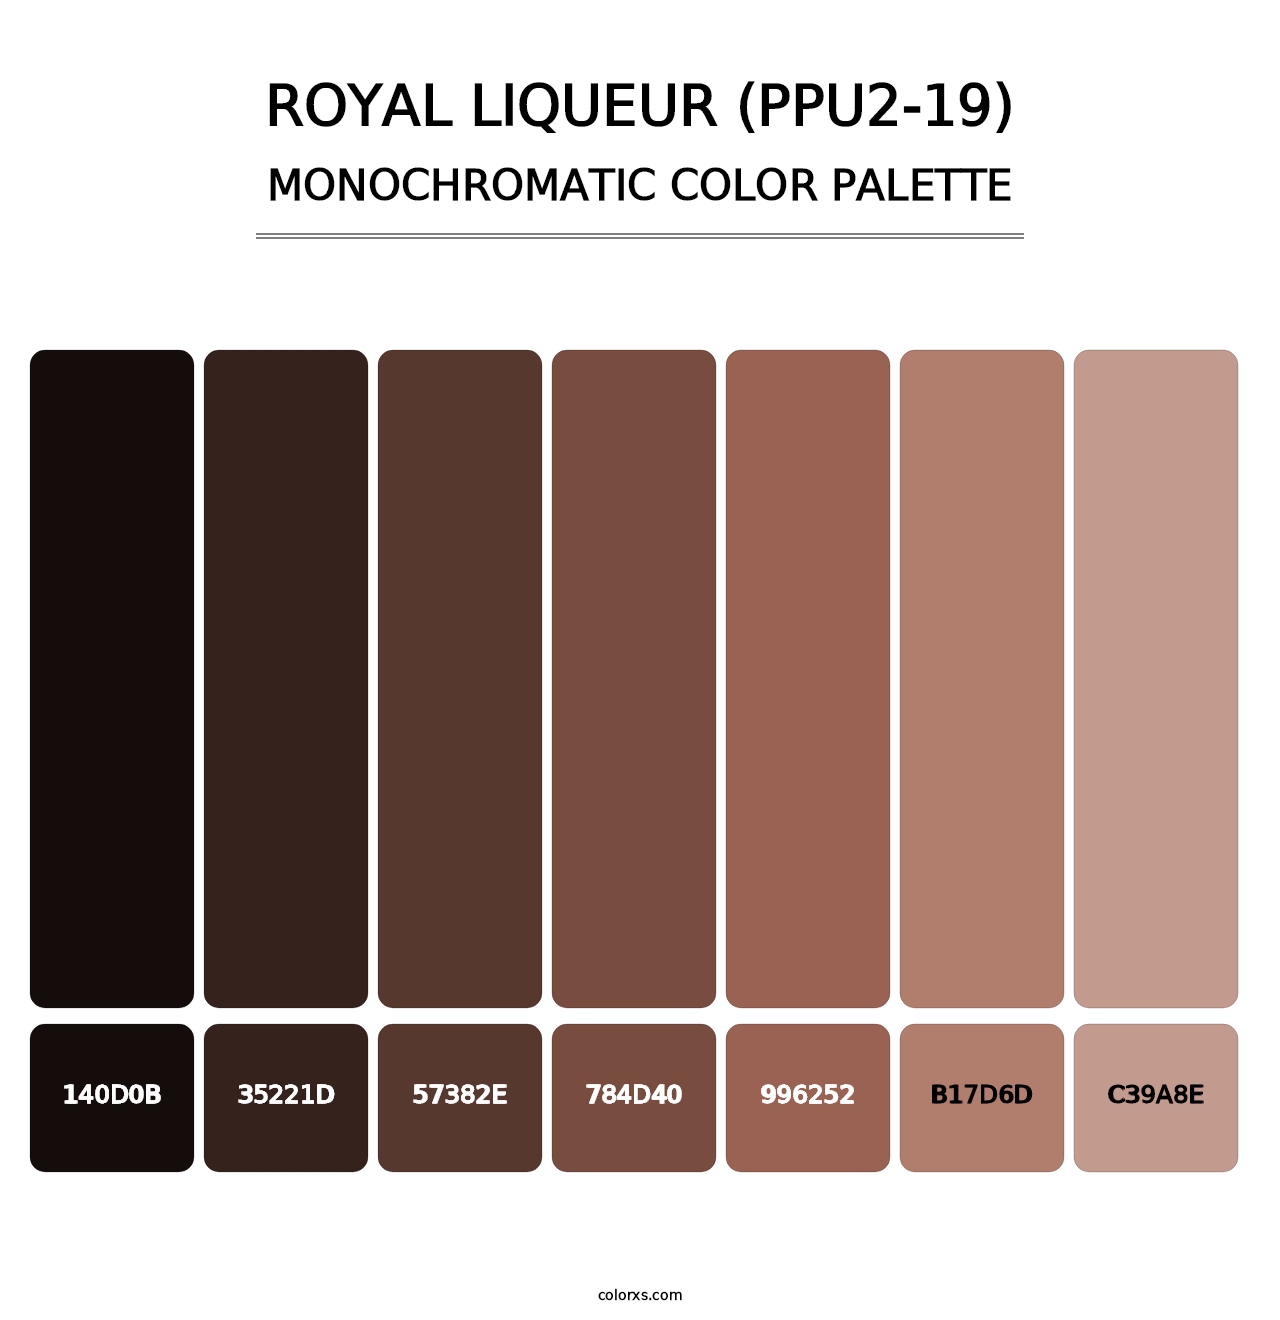 Royal Liqueur (PPU2-19) - Monochromatic Color Palette